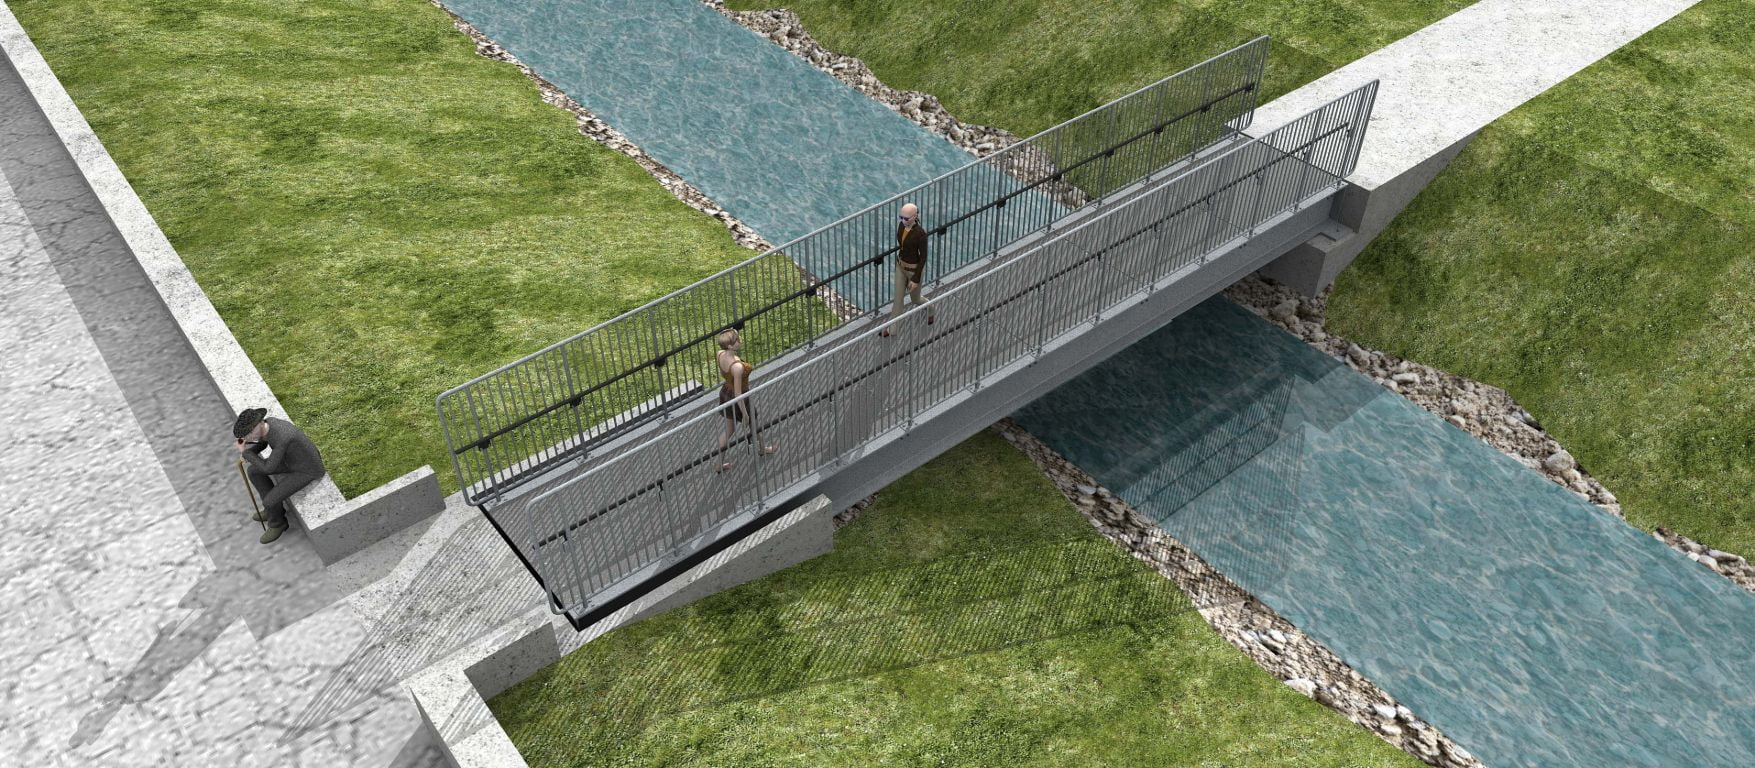 How To Build A Pedestrian Bridge - Image to u